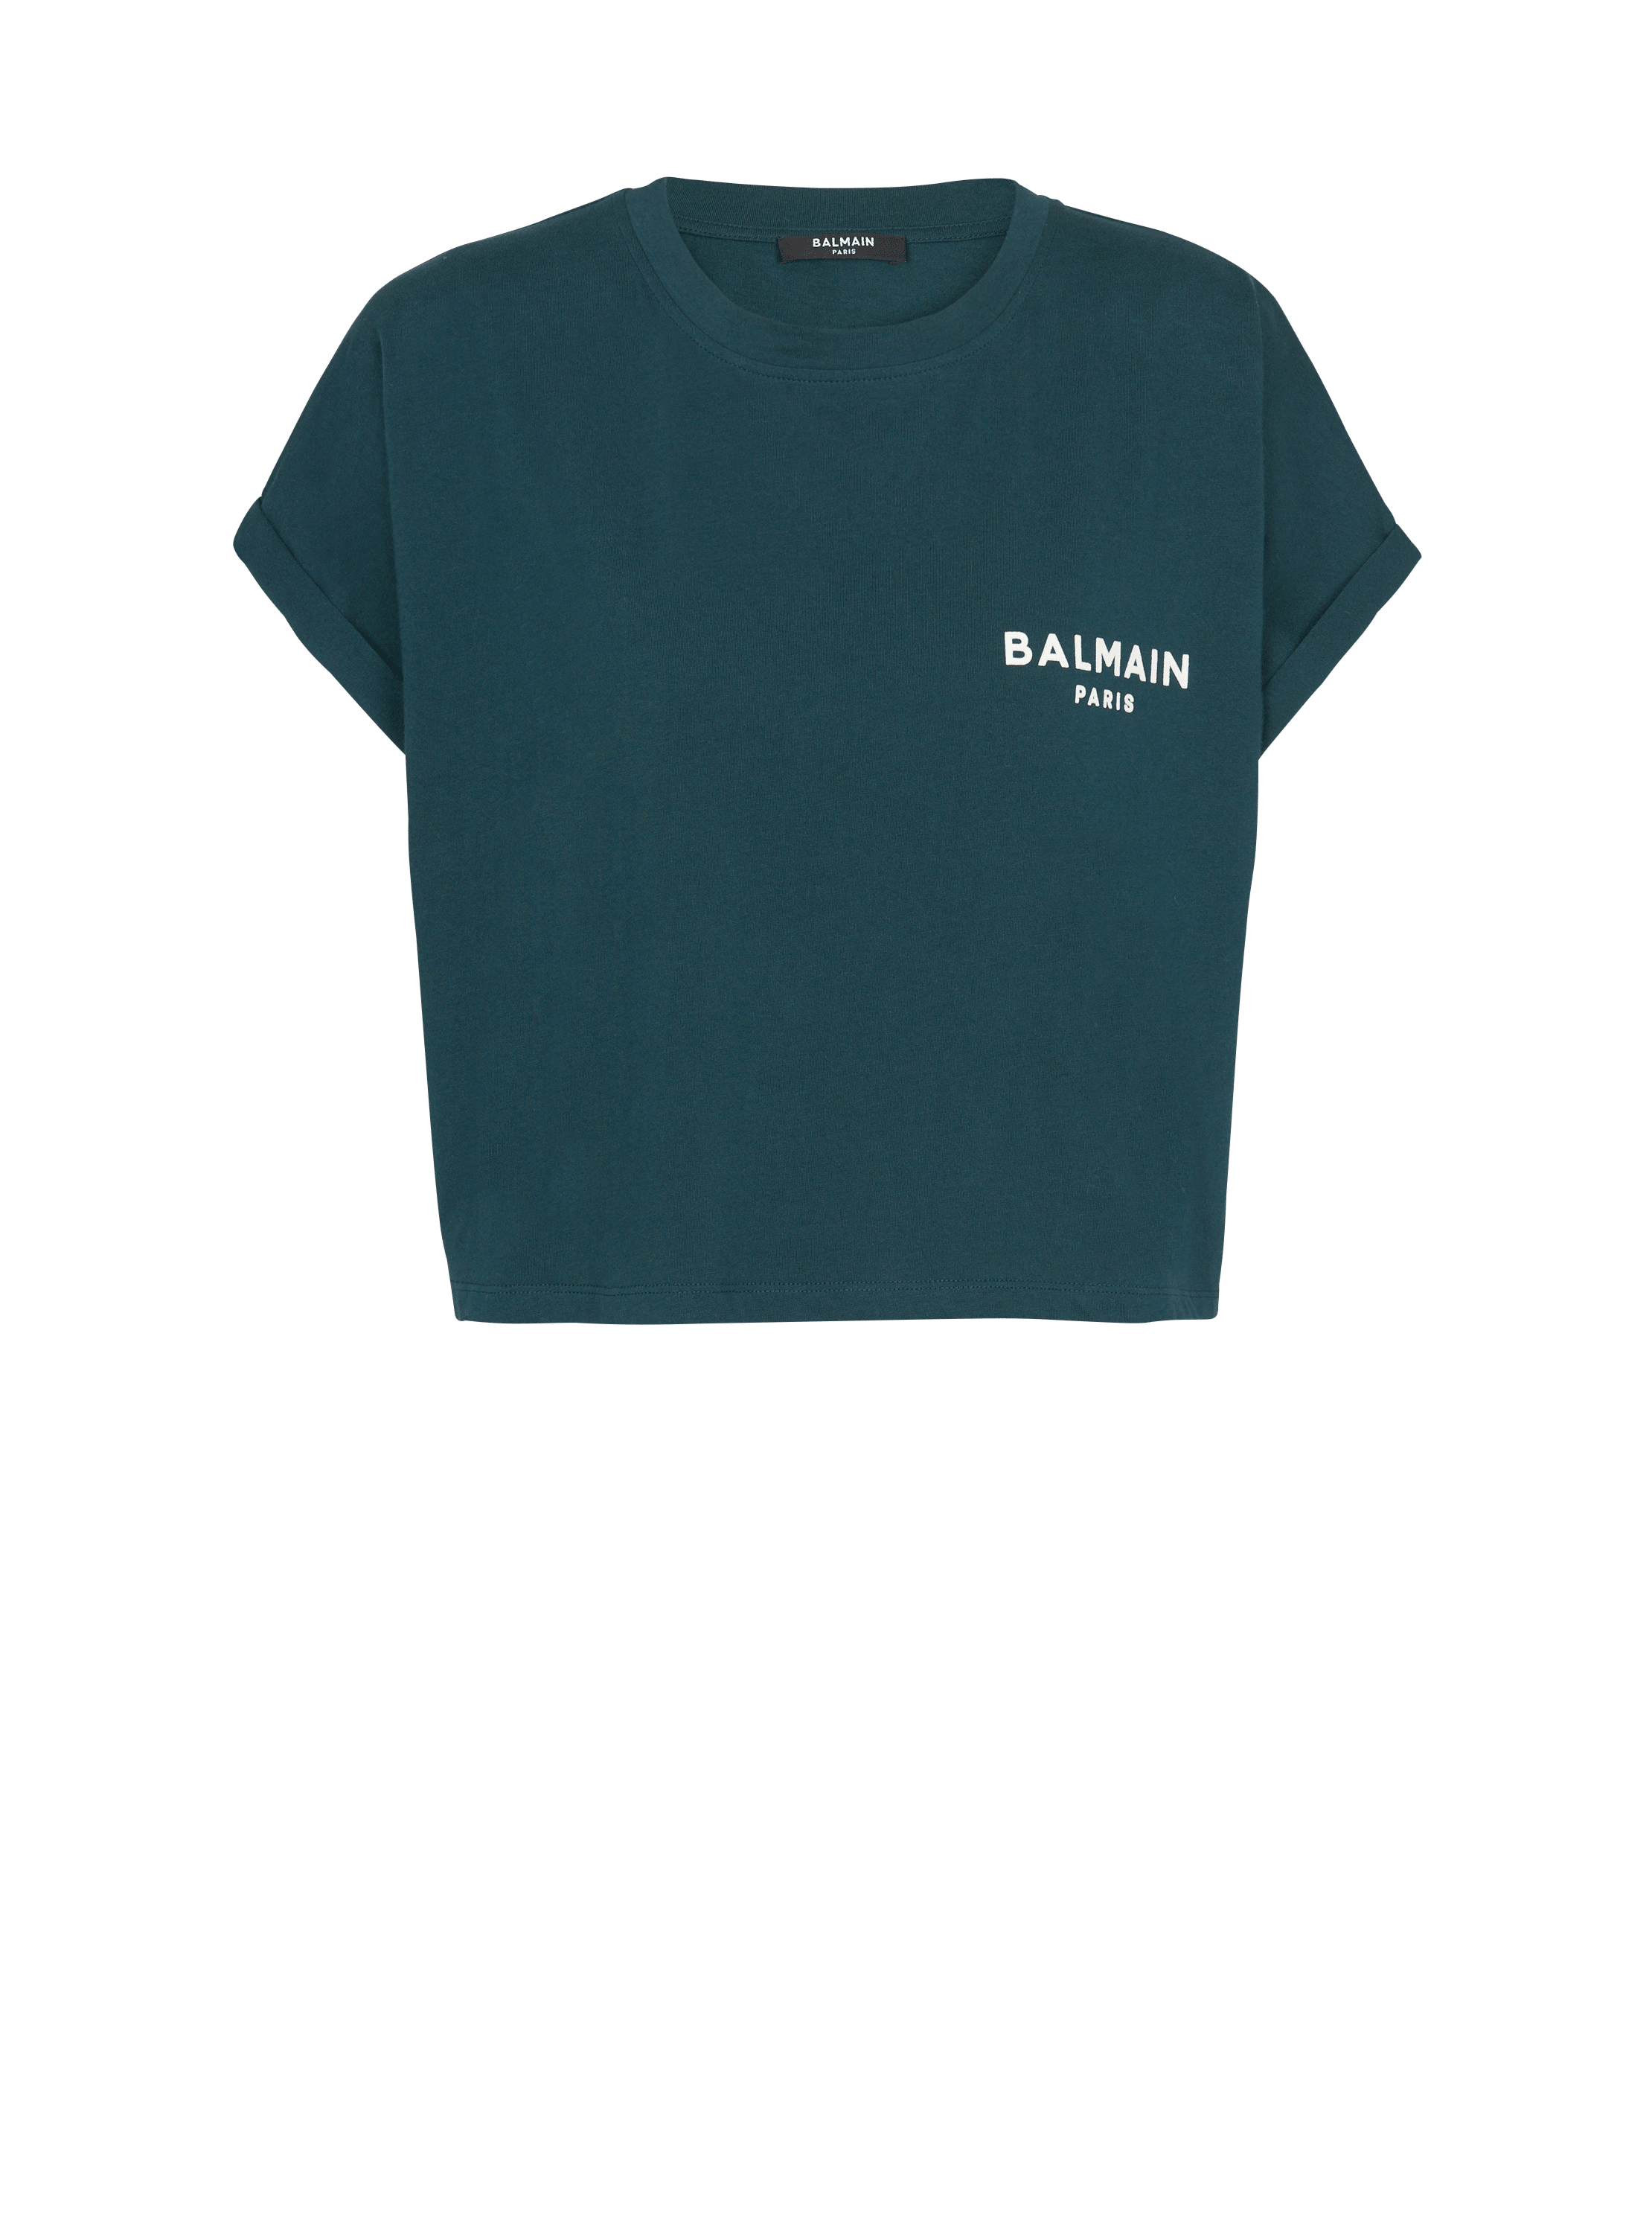 T-shirt court Balmain Paris floqué, vert, hi-res